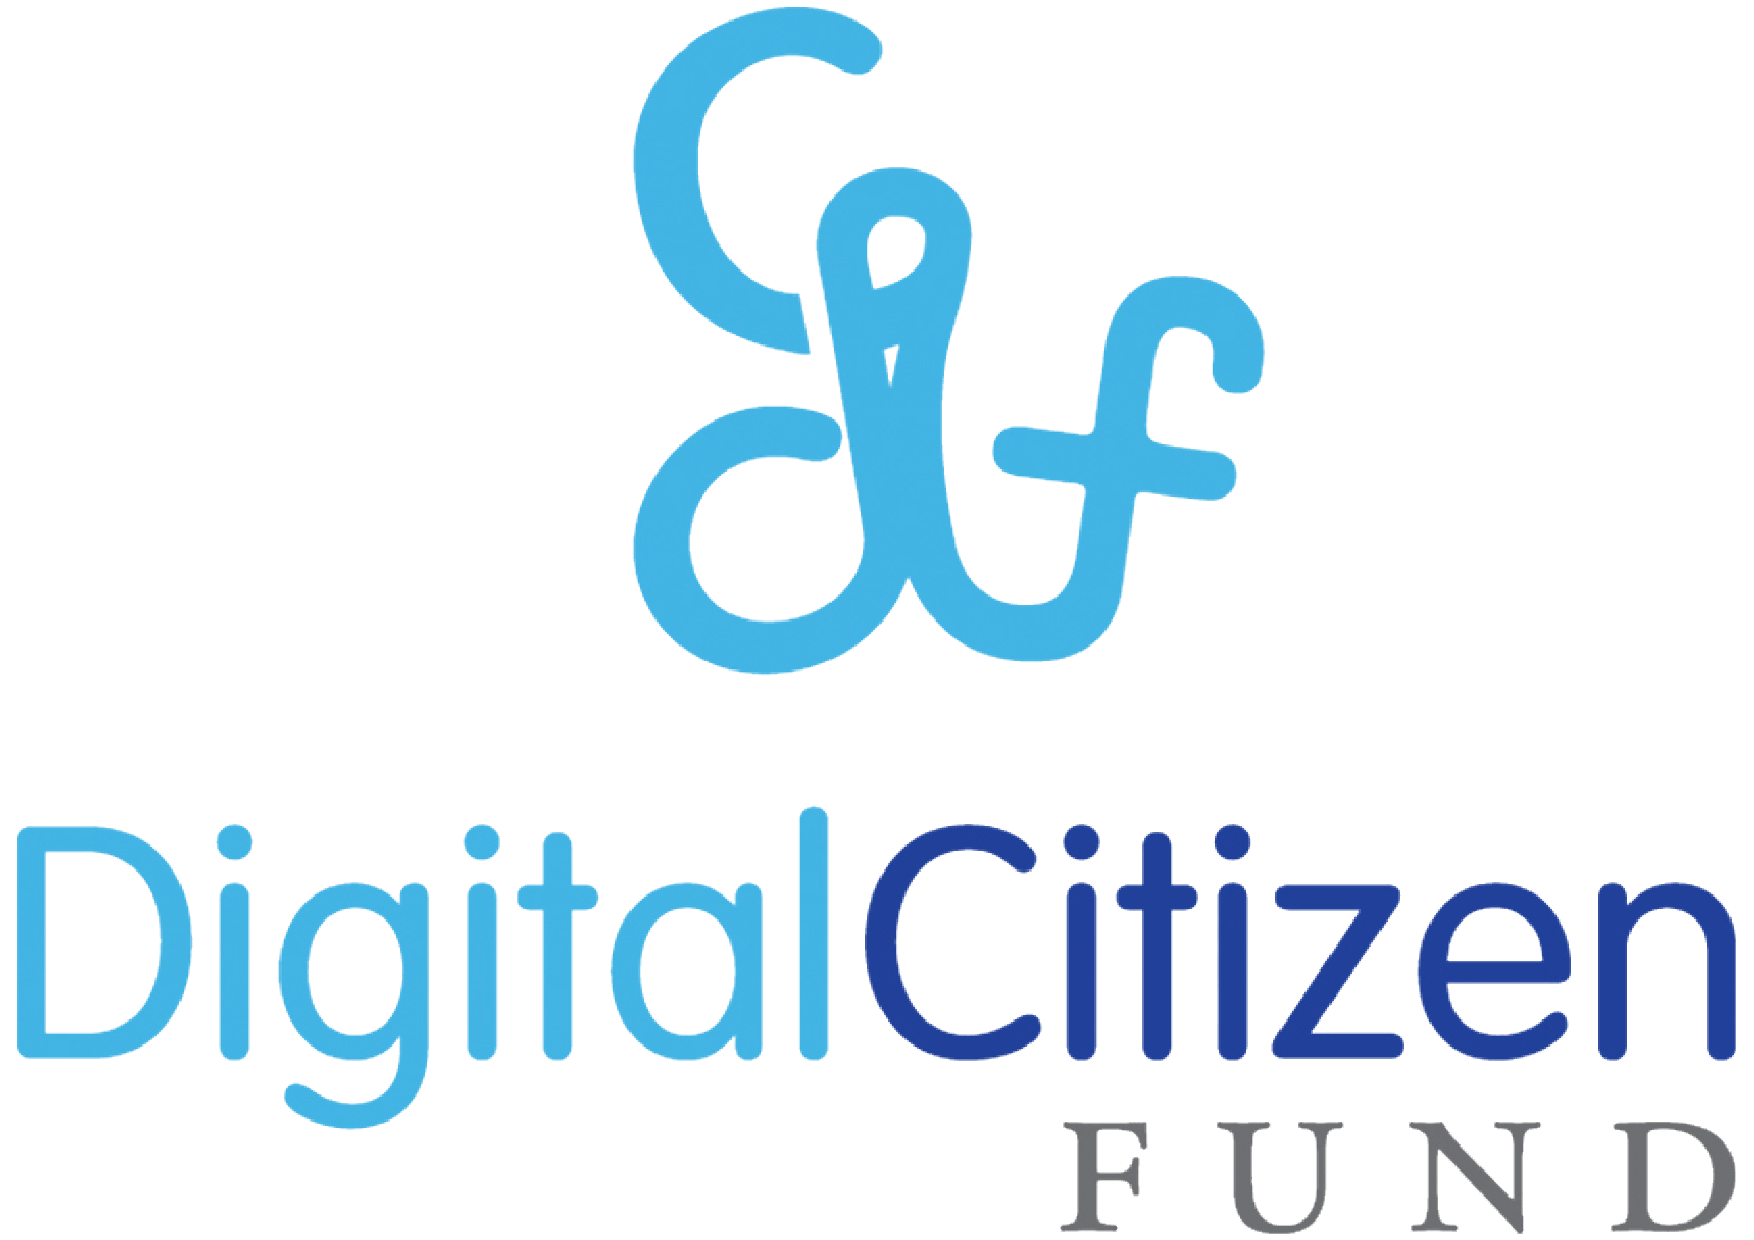 Digital Citizen Fund